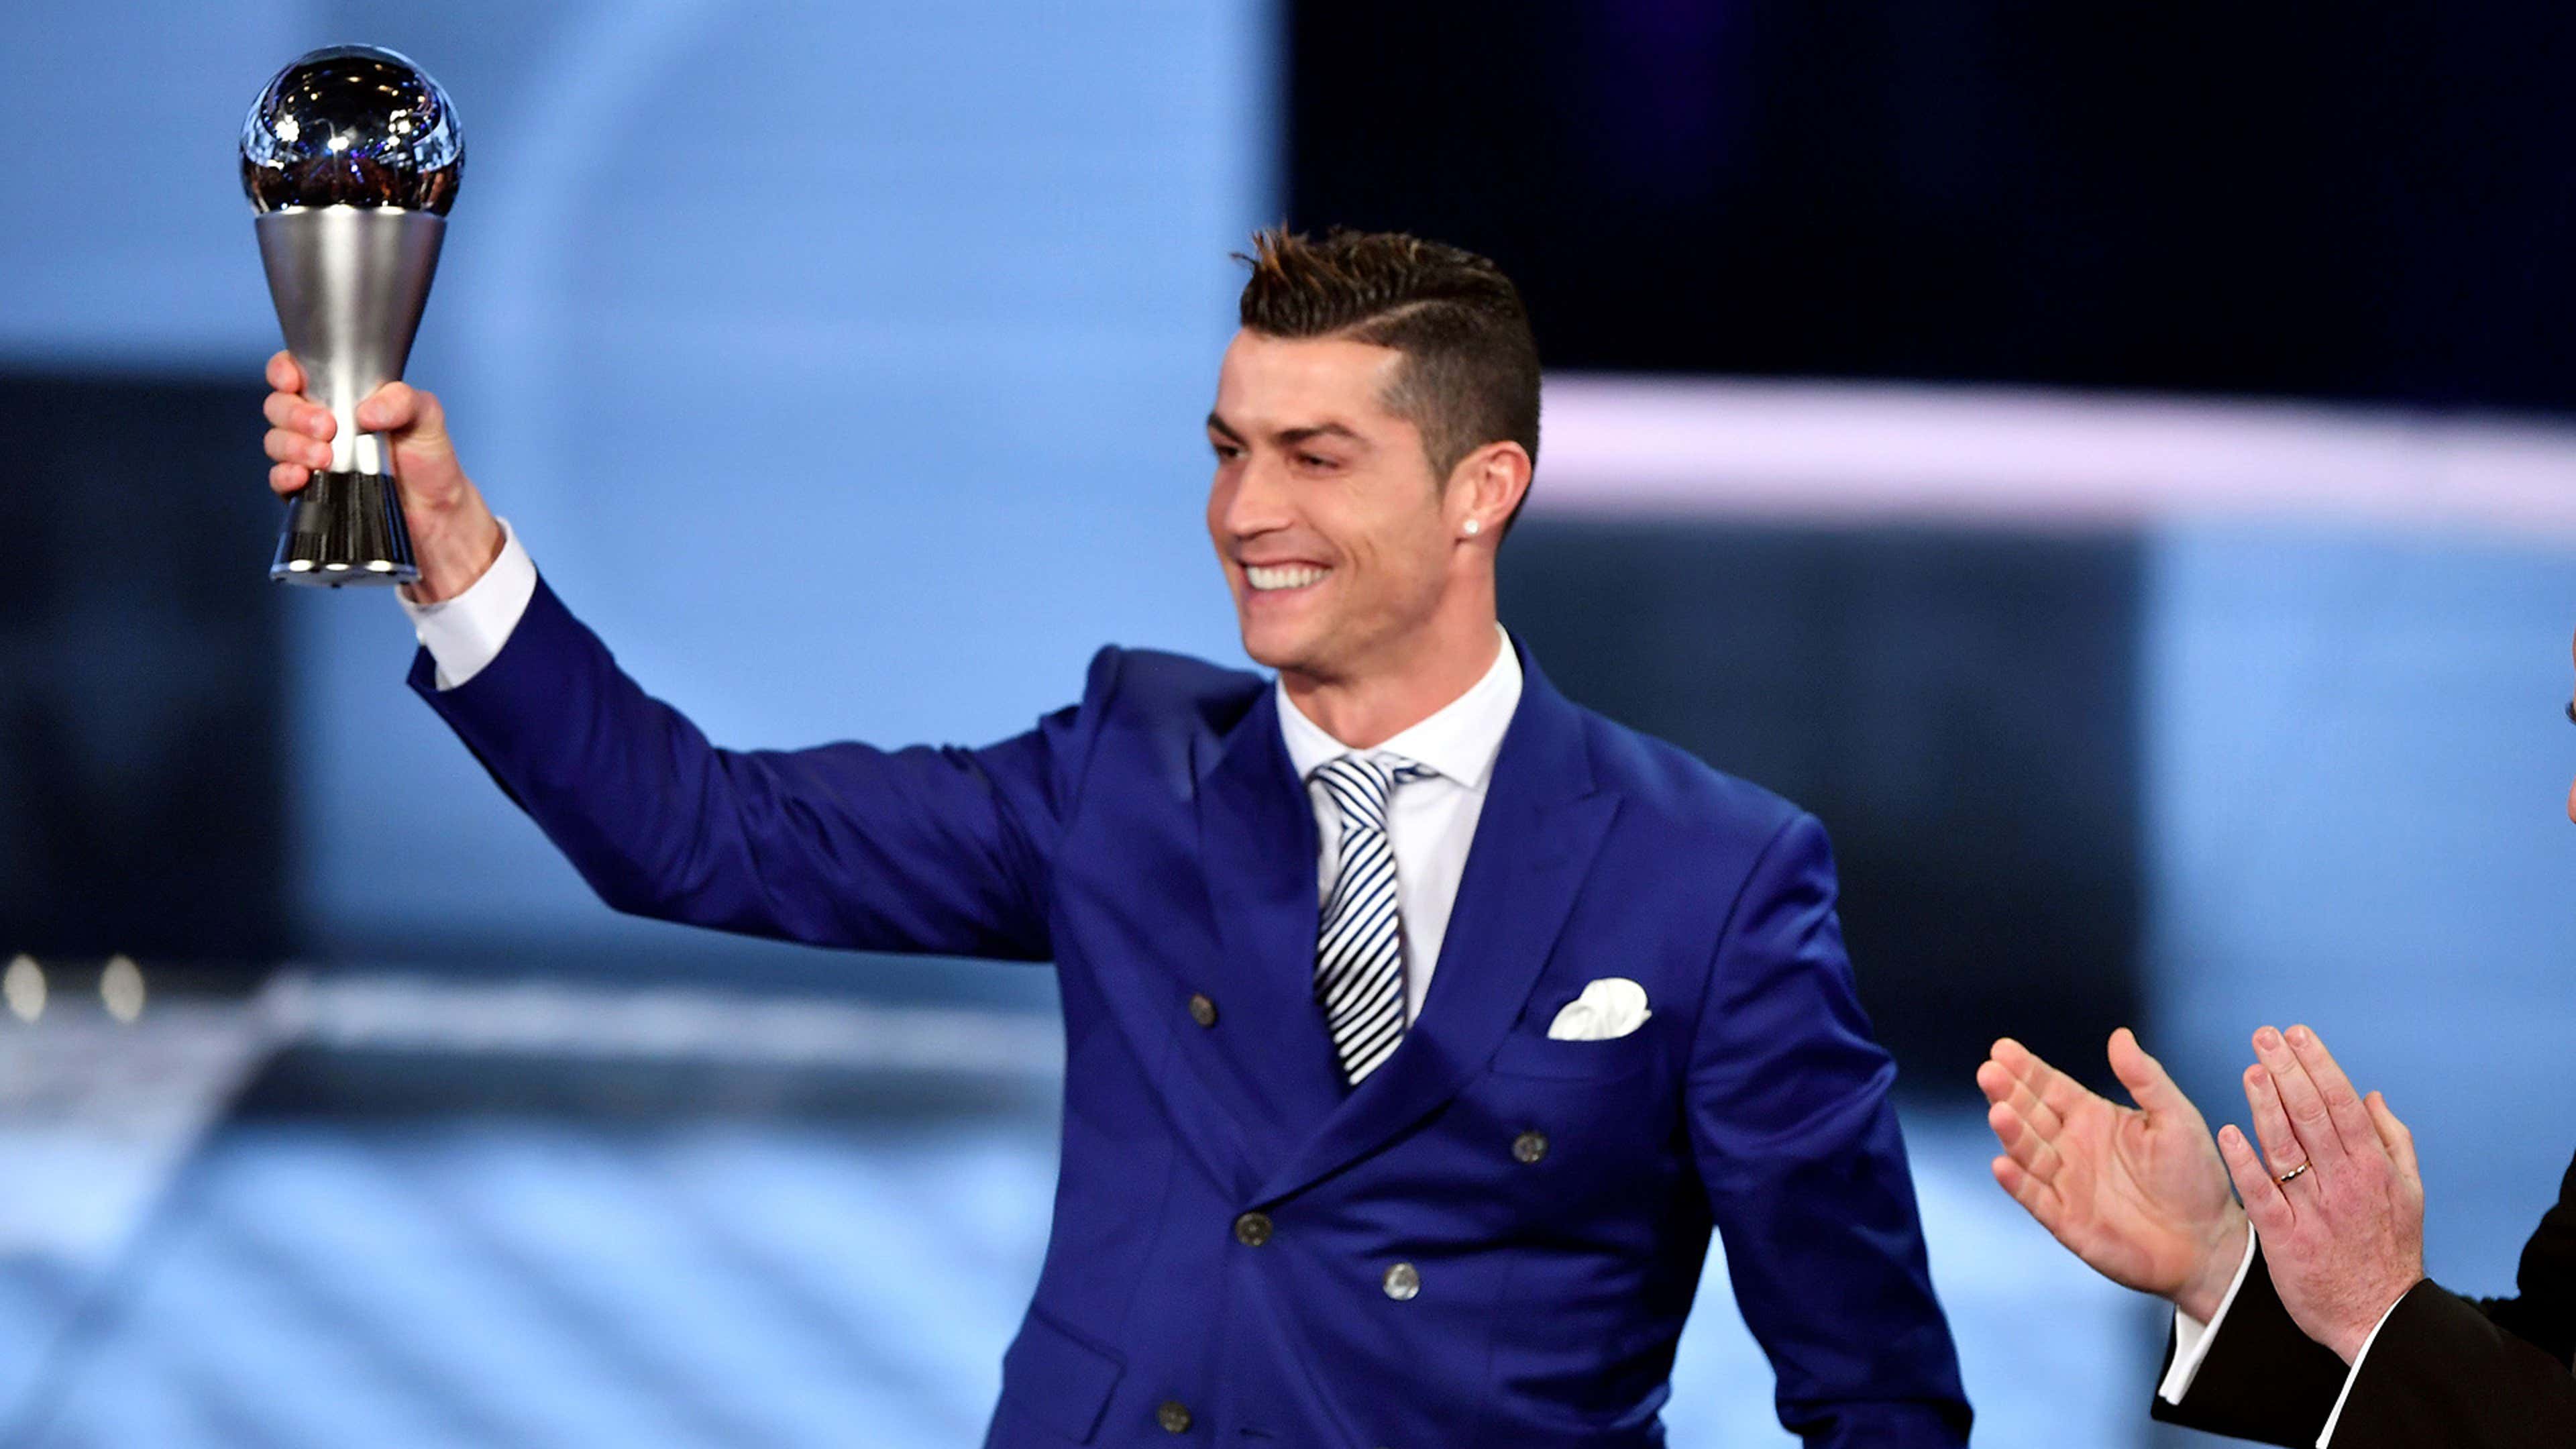 Cristiano Ronaldo ganha prêmio de melhor jogador do ano da Fifa